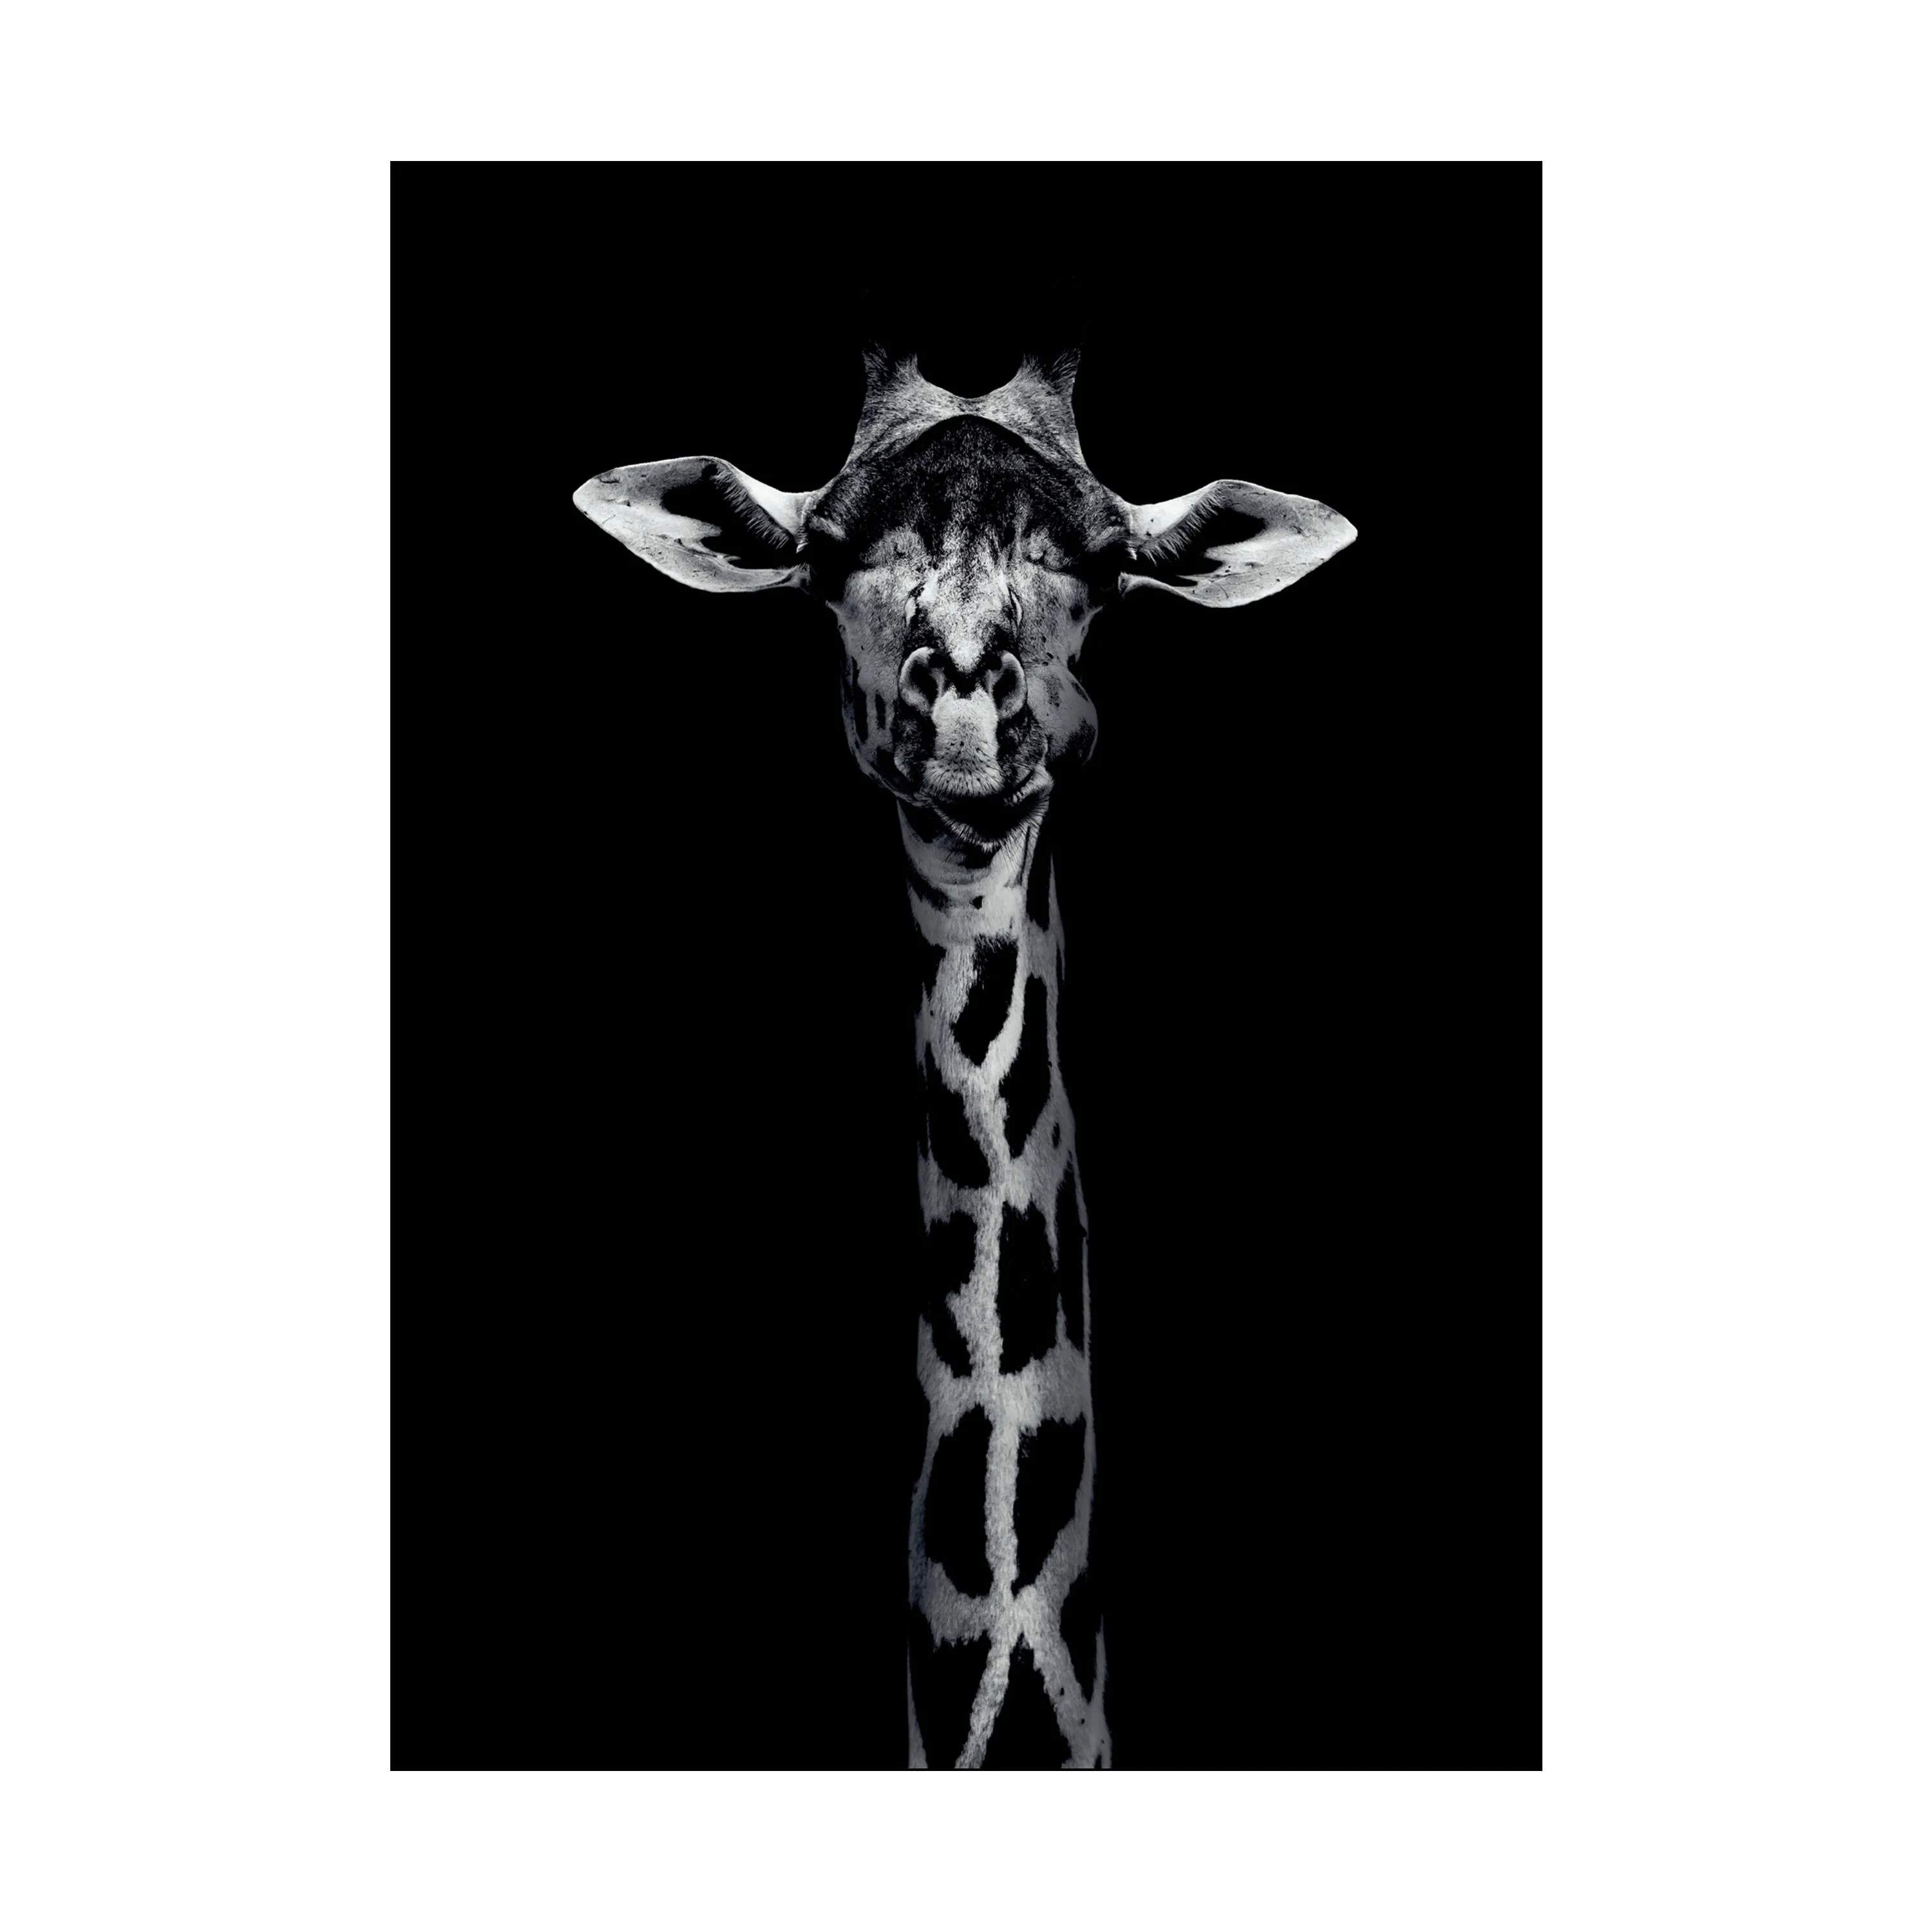 Plakat - Giraffe Portrait, sort, large